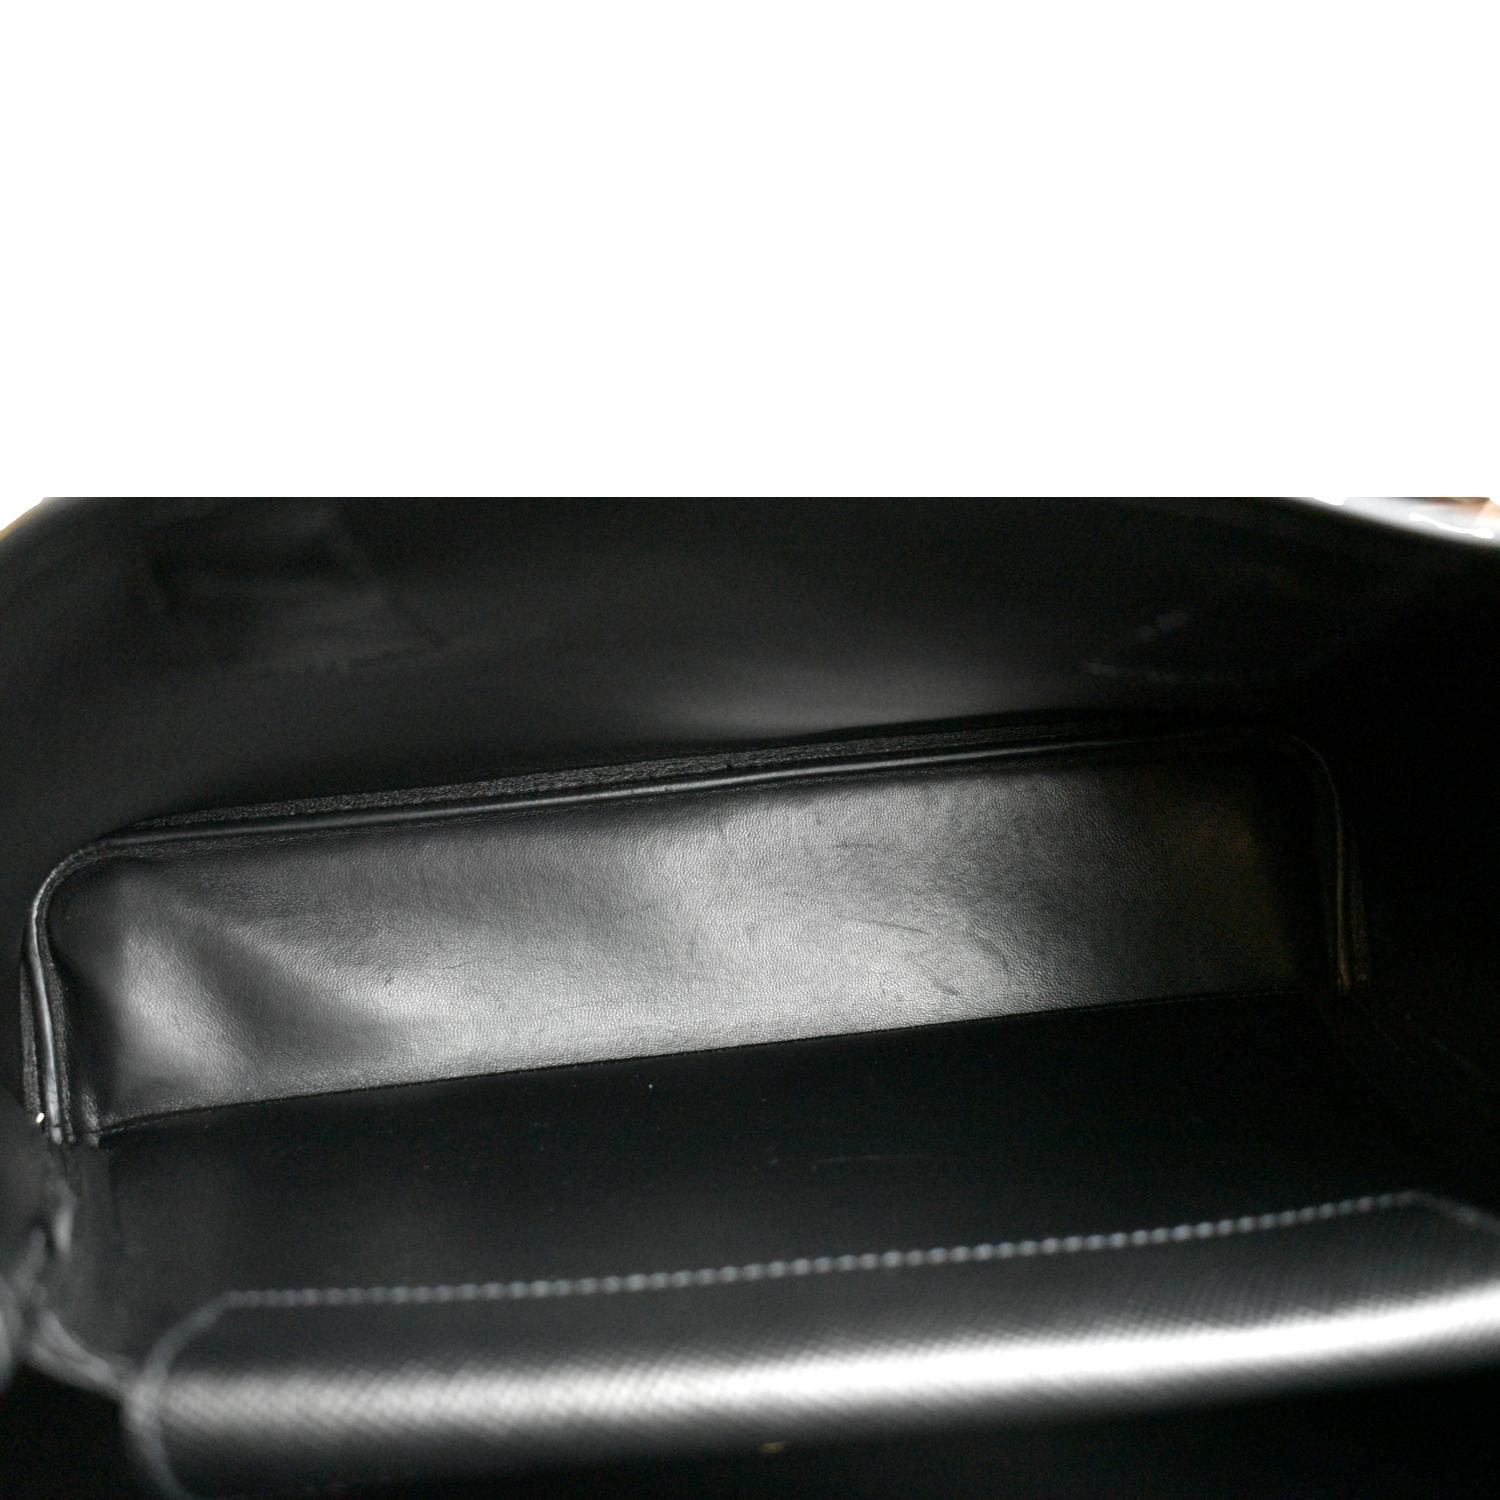 White/black Small Saffiano Leather Double Prada Bag